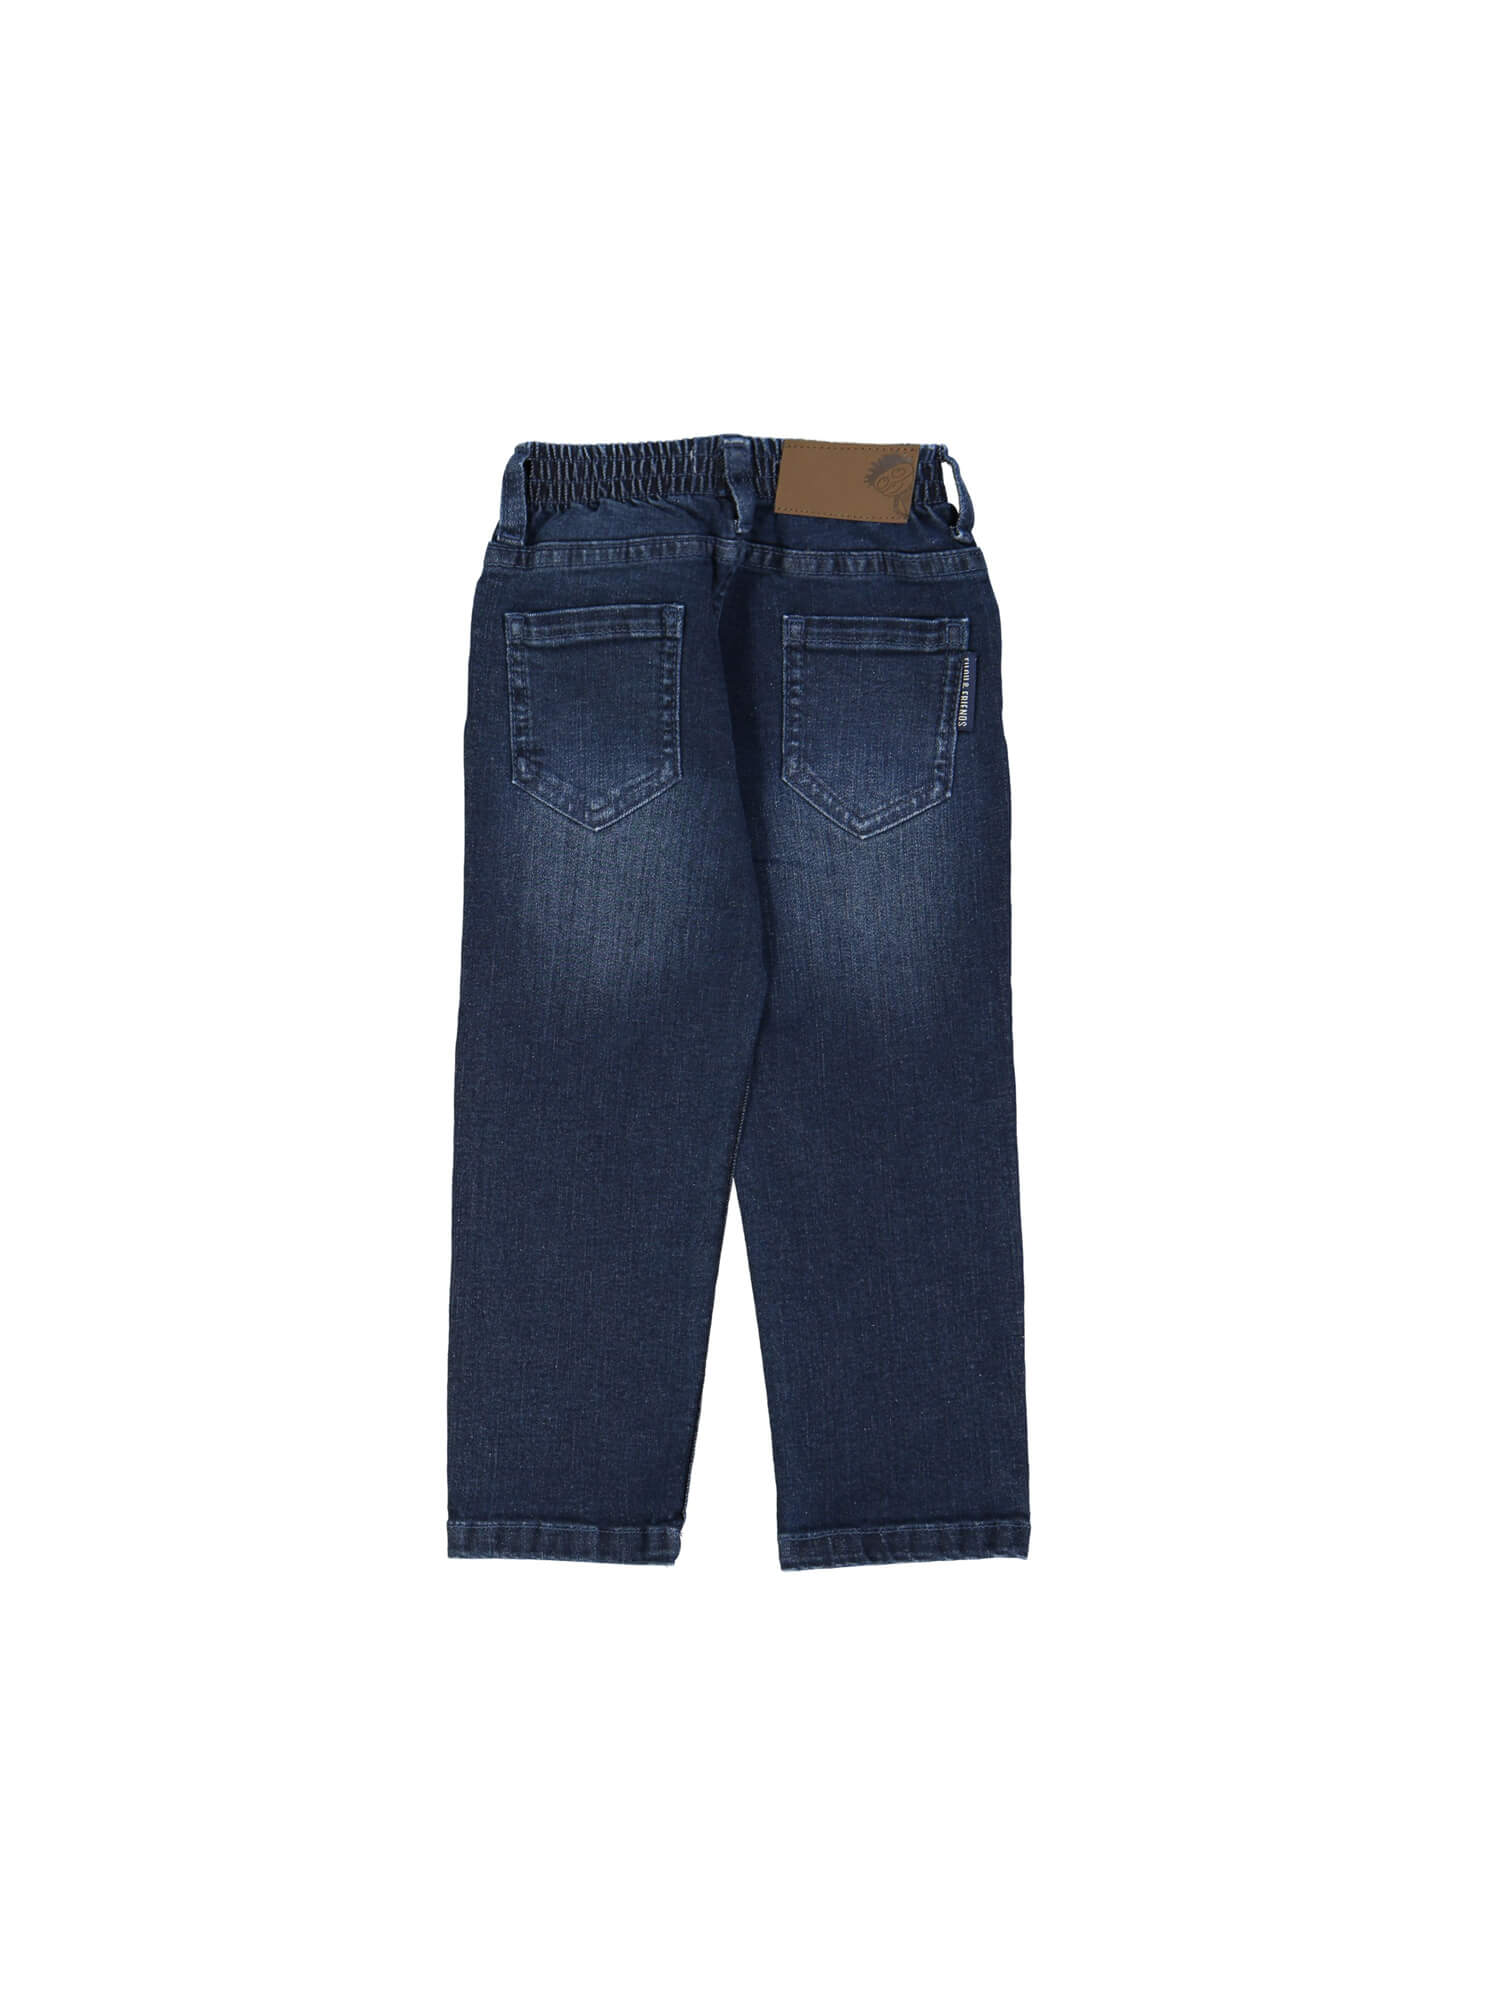 broek regular jeans blauw 10j